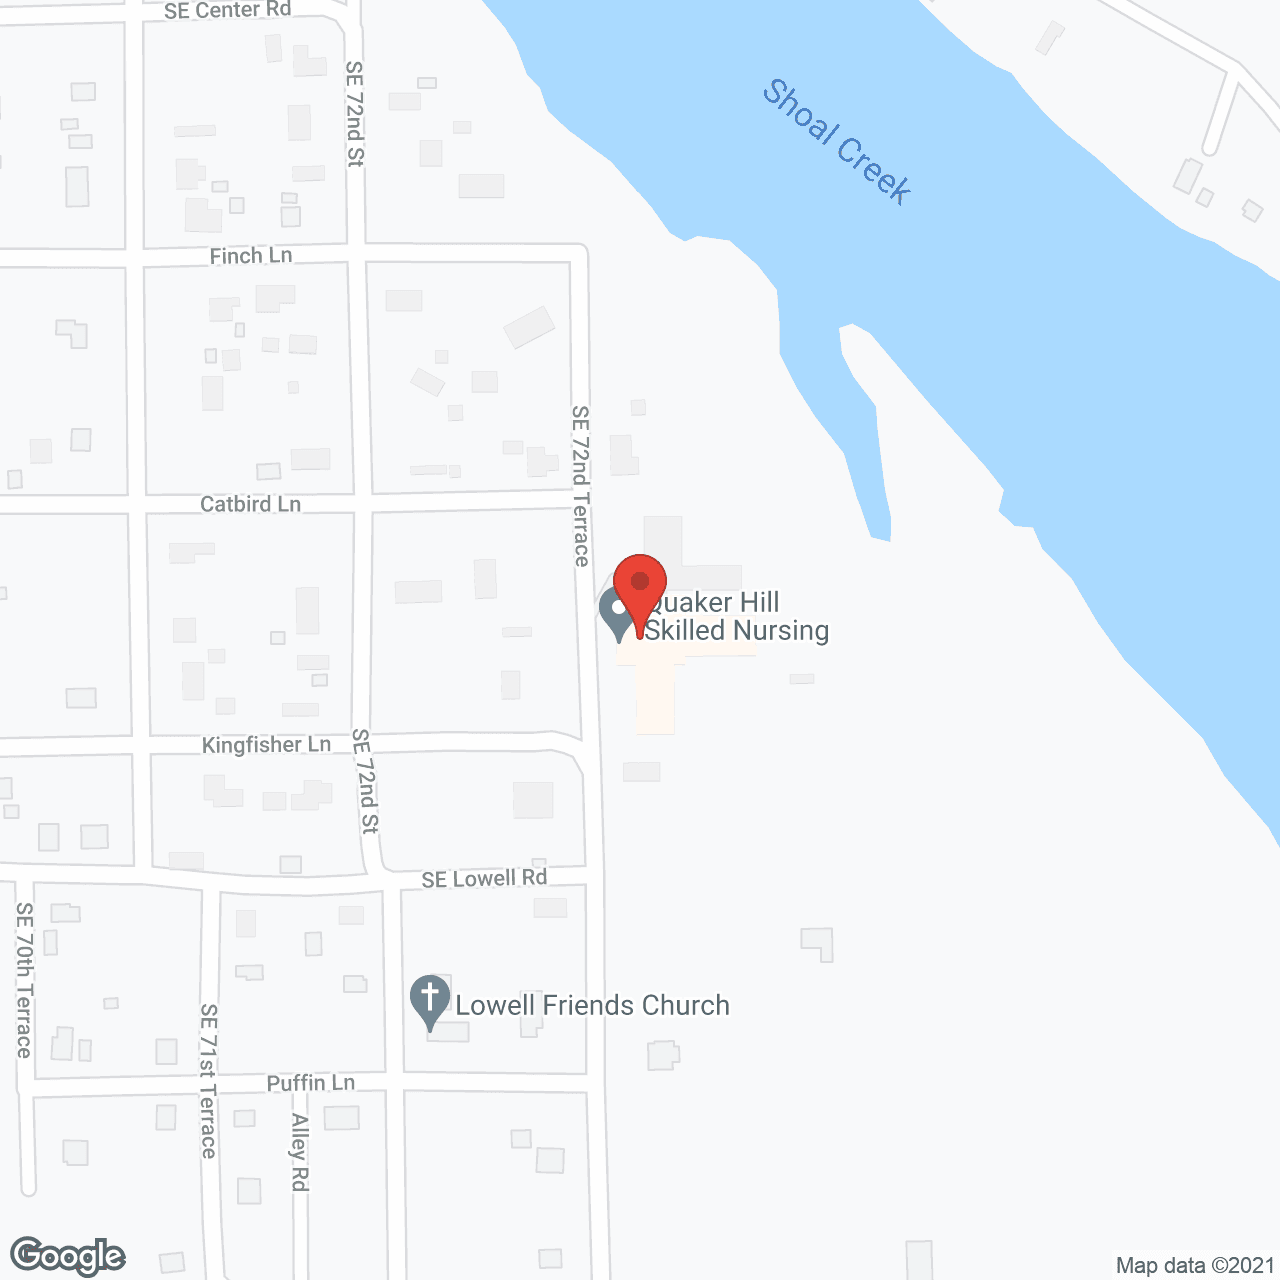 Quaker Hill in google map